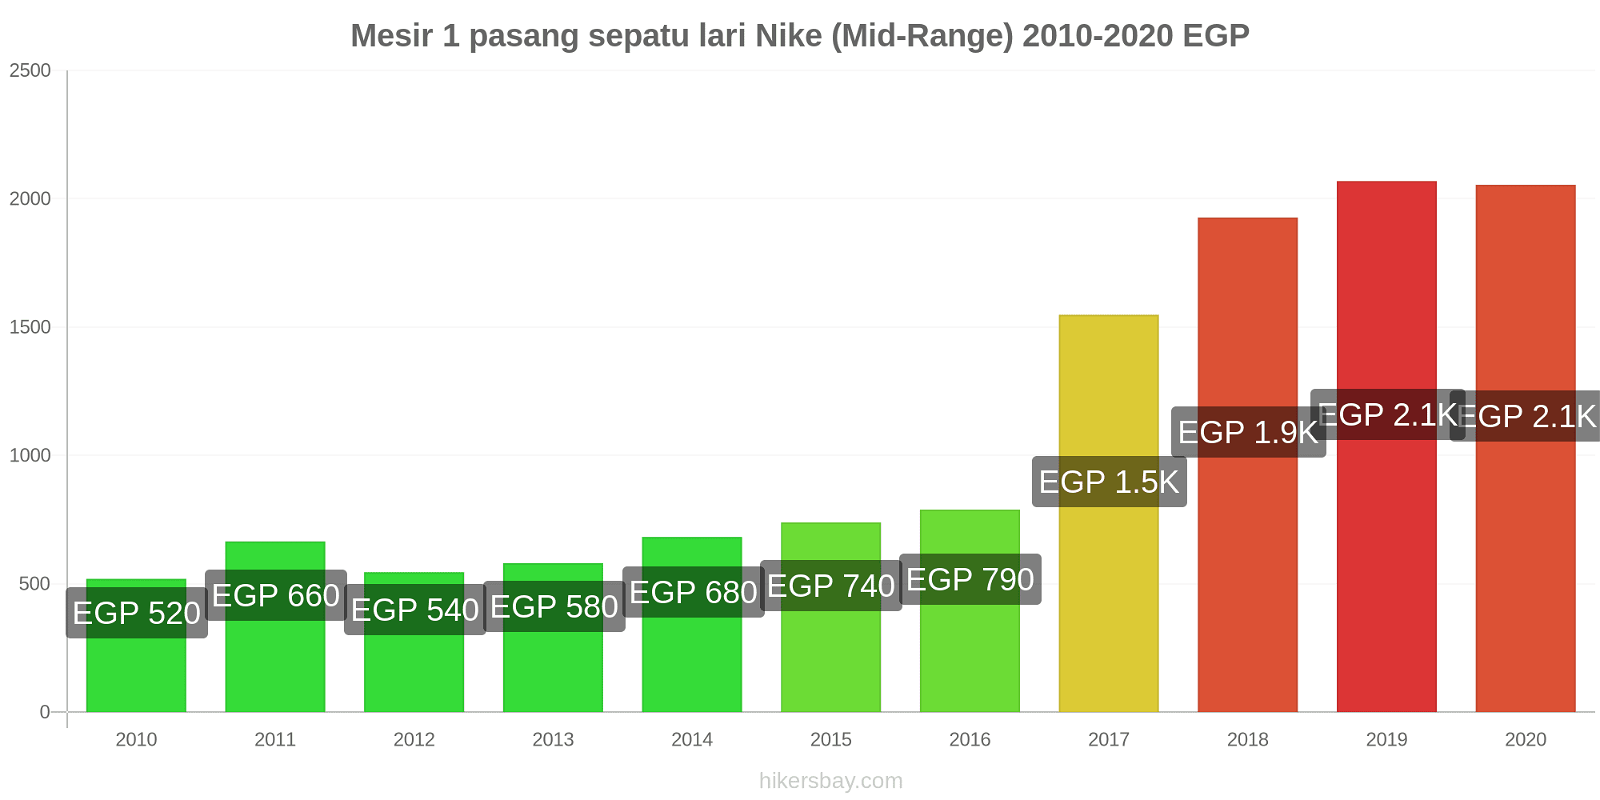 Mesir perubahan harga 1 pasang sepatu lari Nike (Mid-Range) hikersbay.com